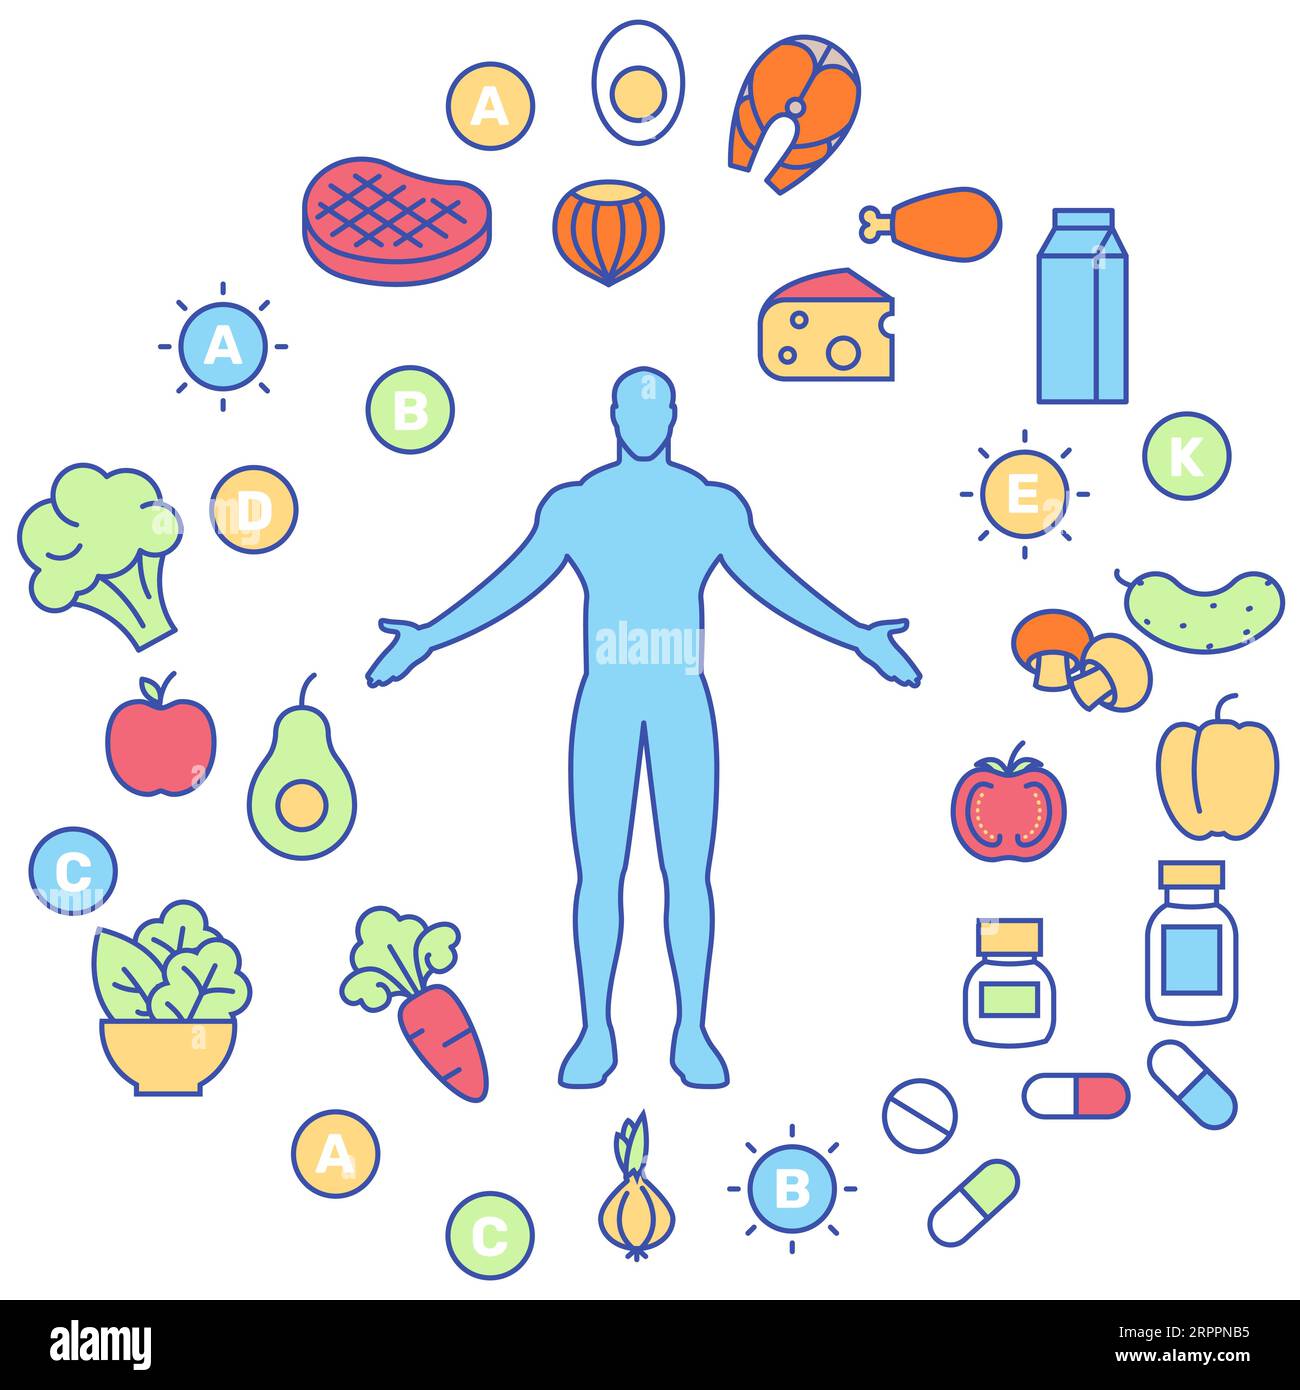 Ausgewogene gesunde Ernährung und Nahrungsergänzungsmittel Konzept Ikonen, Wellness, biohacking Vitamin Diät und Gesundheit Verbesserung, Vektor Stock Vektor